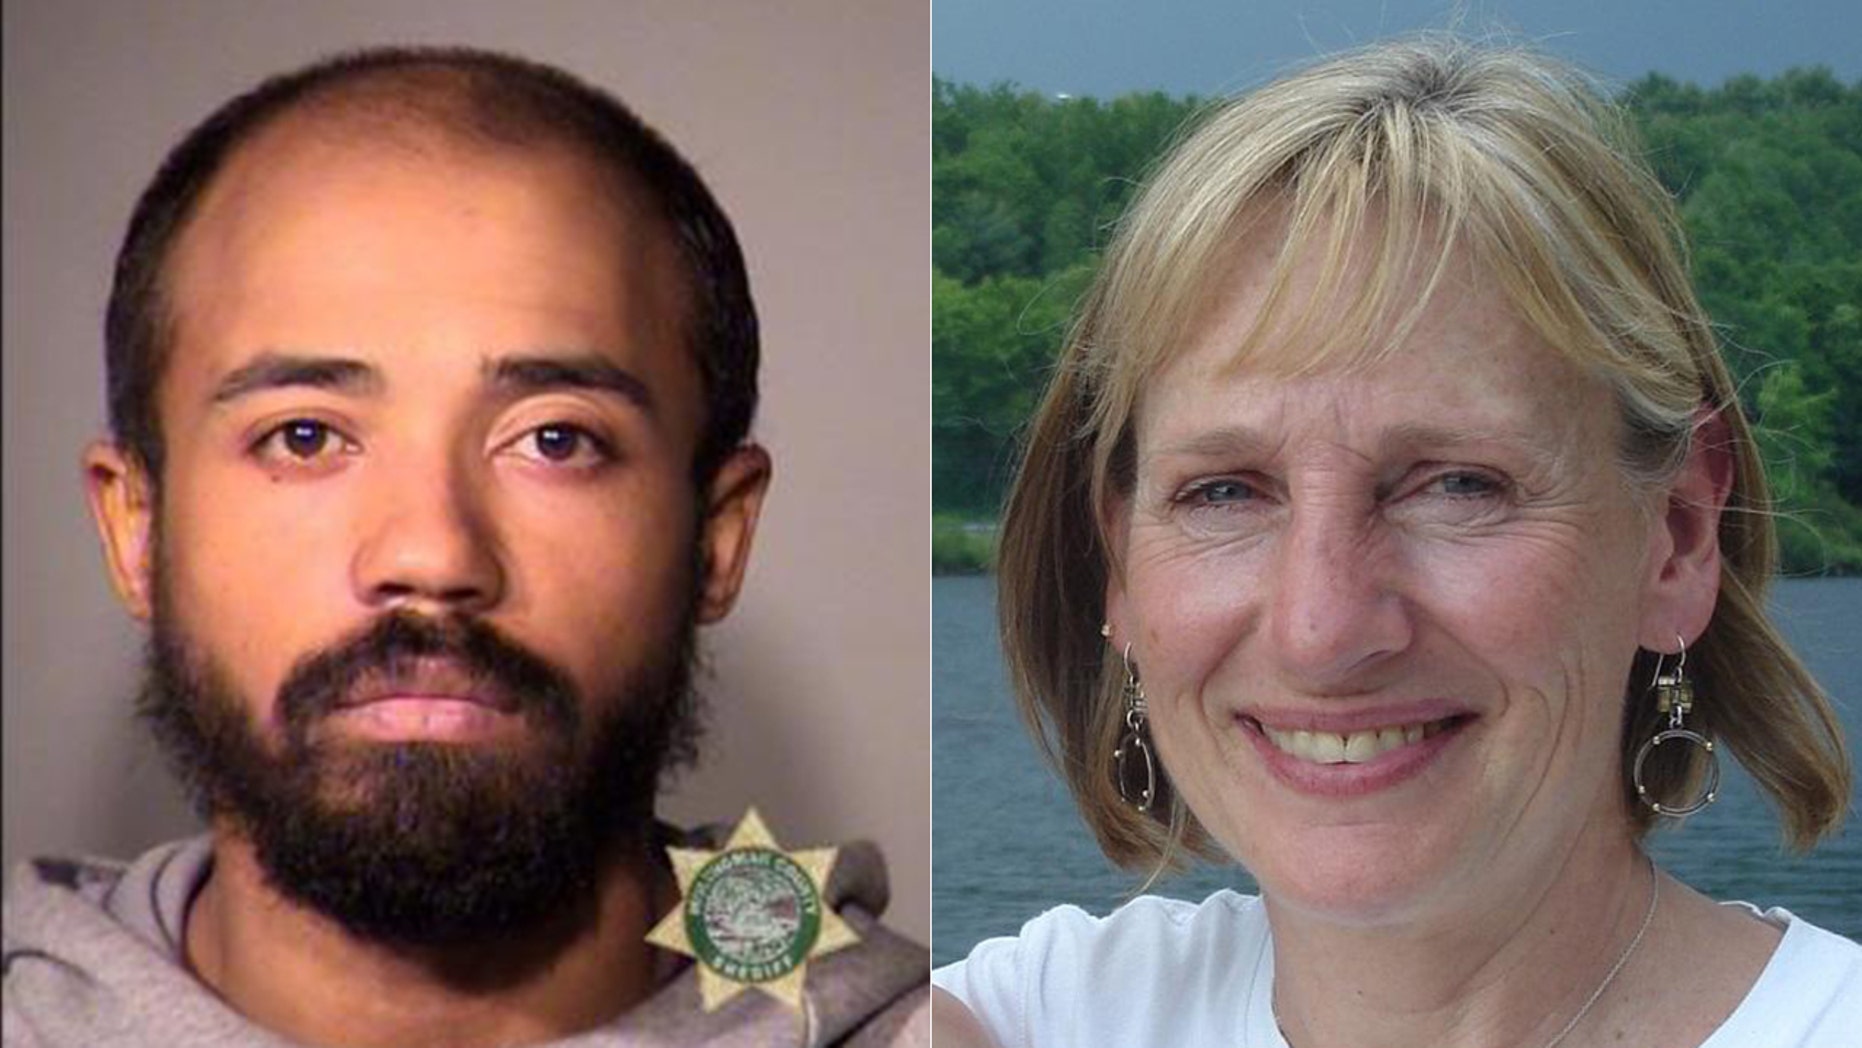 Portland police arrest man in criminal lawyer’s decade-old cold case murder